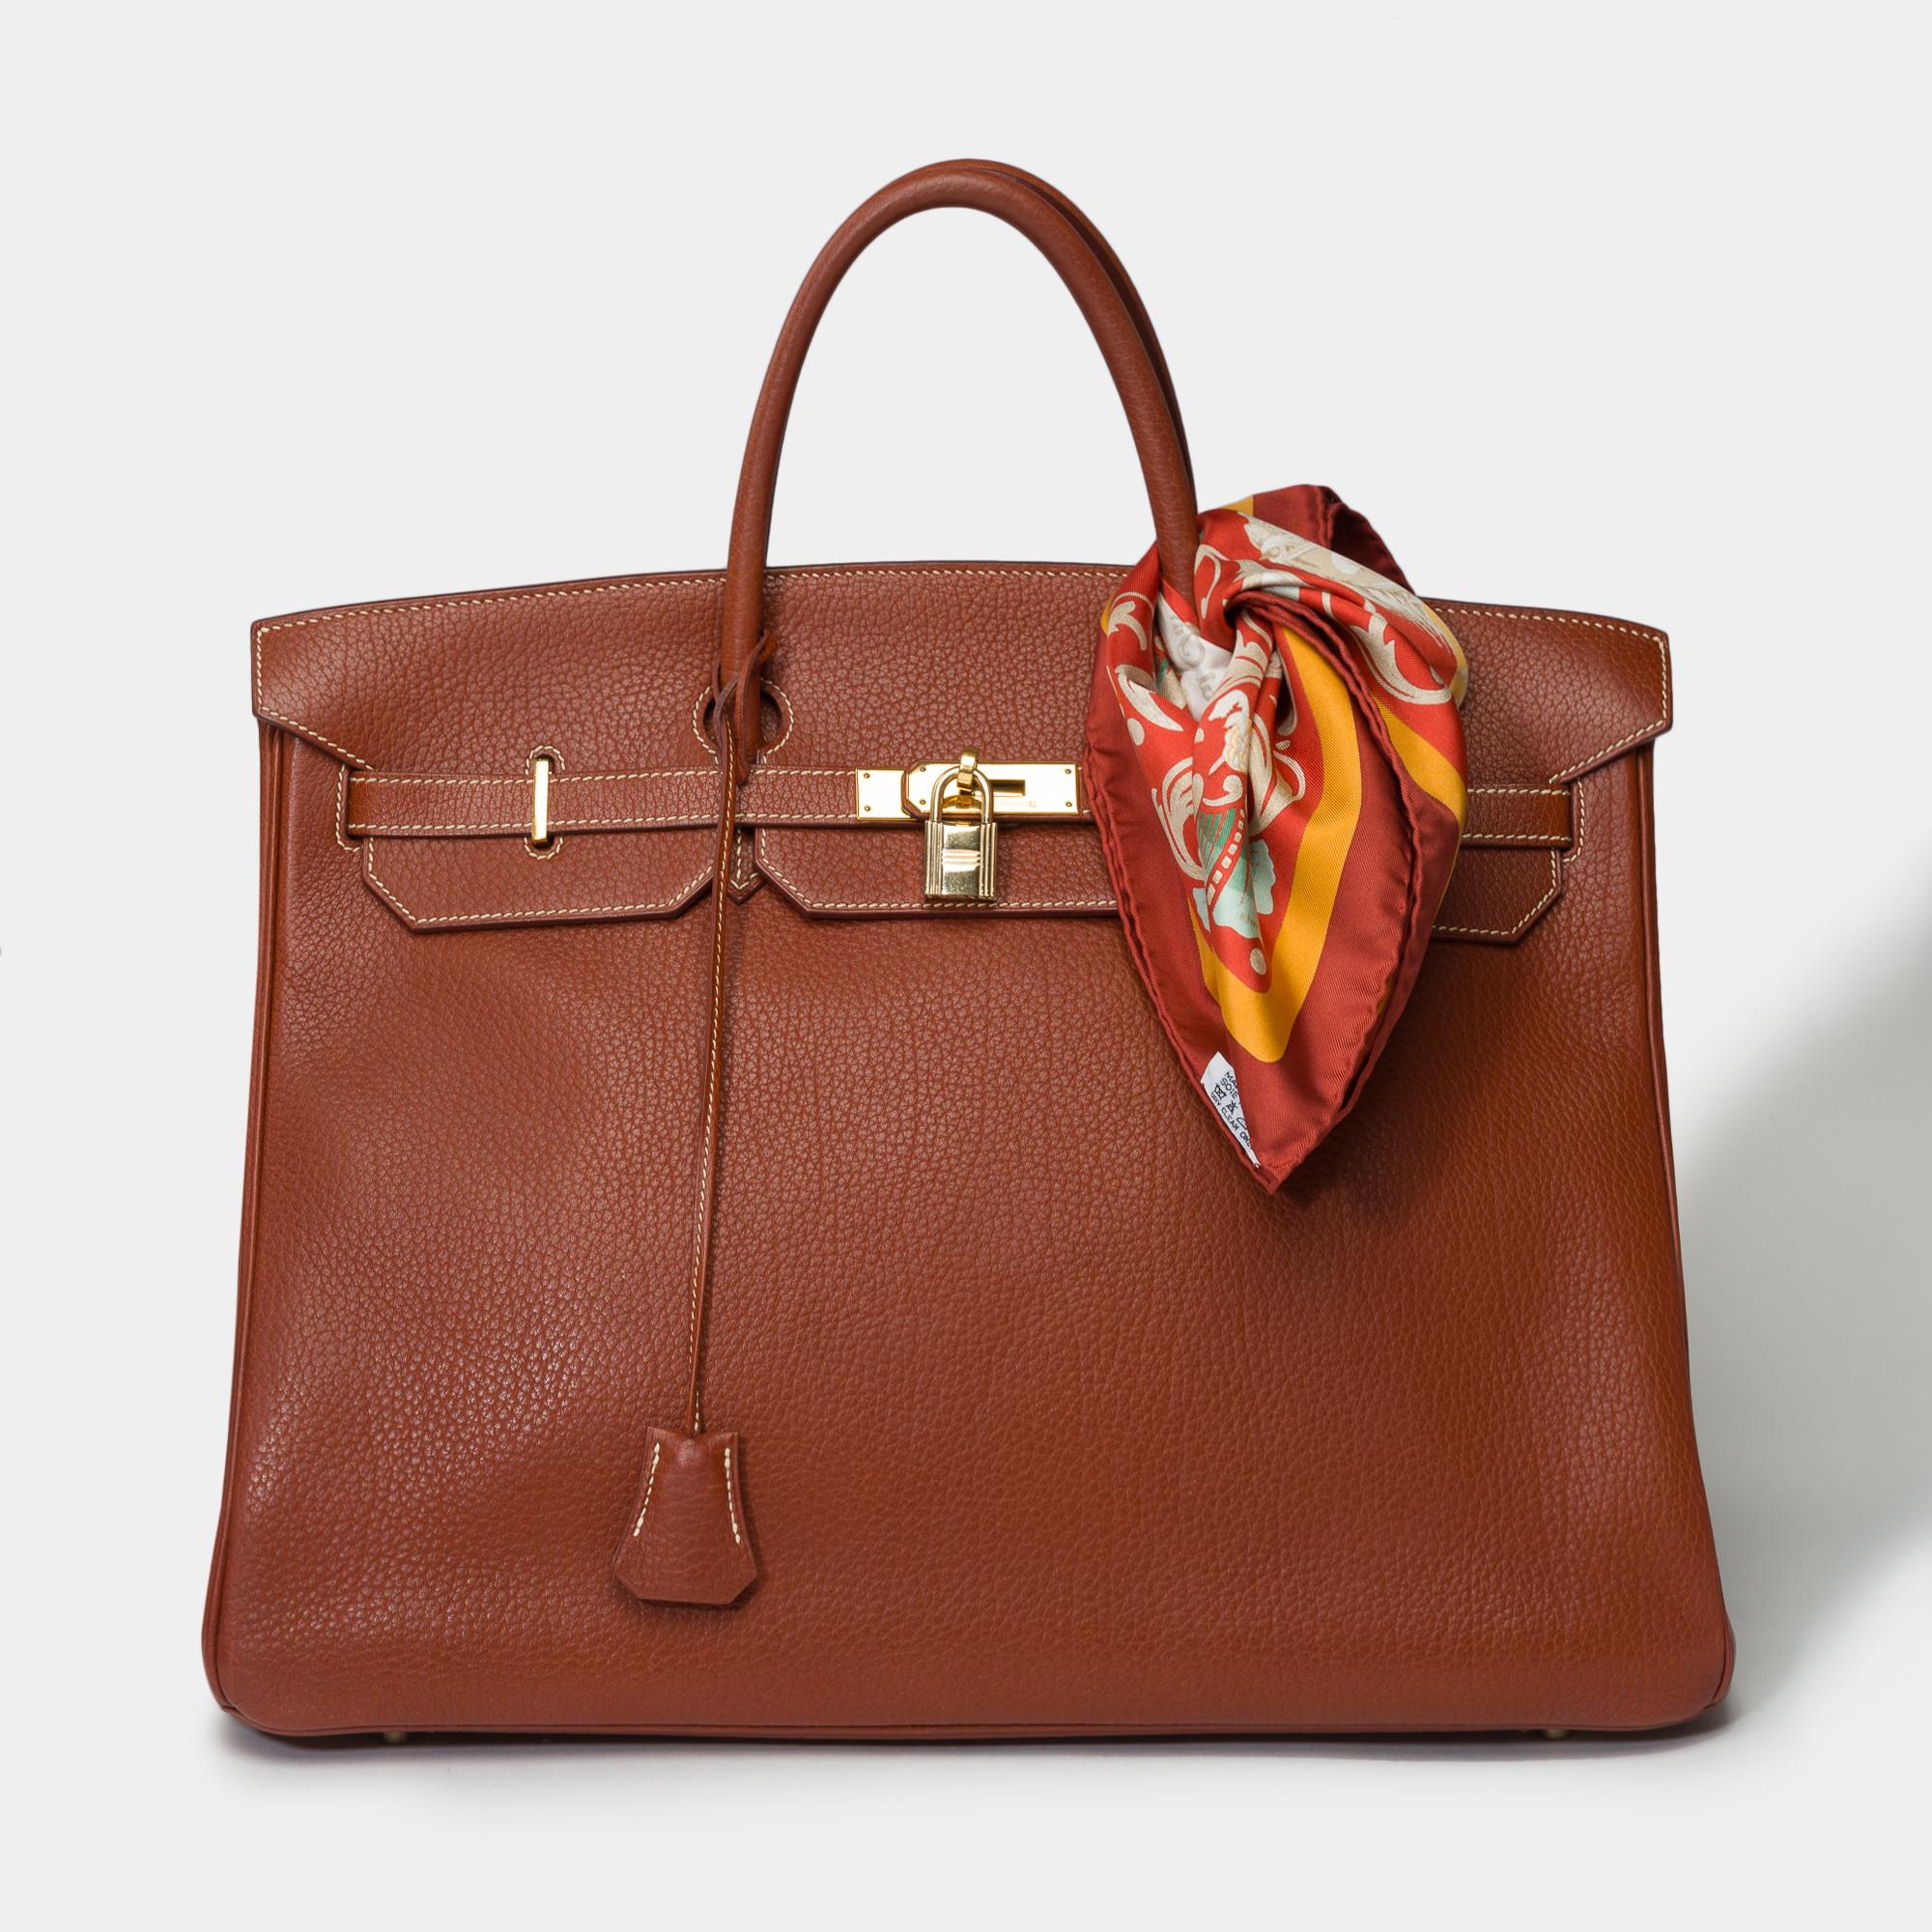 Magnifique sac à main Hermès Birkin 40 en cuir Brick Fjord, métal doré, double anse en cuir brique pour un portage à la main.

Fermeture à rabat
Doublure intérieure en cuir brique, une poche zippée, une poche plaquée
Signature : 